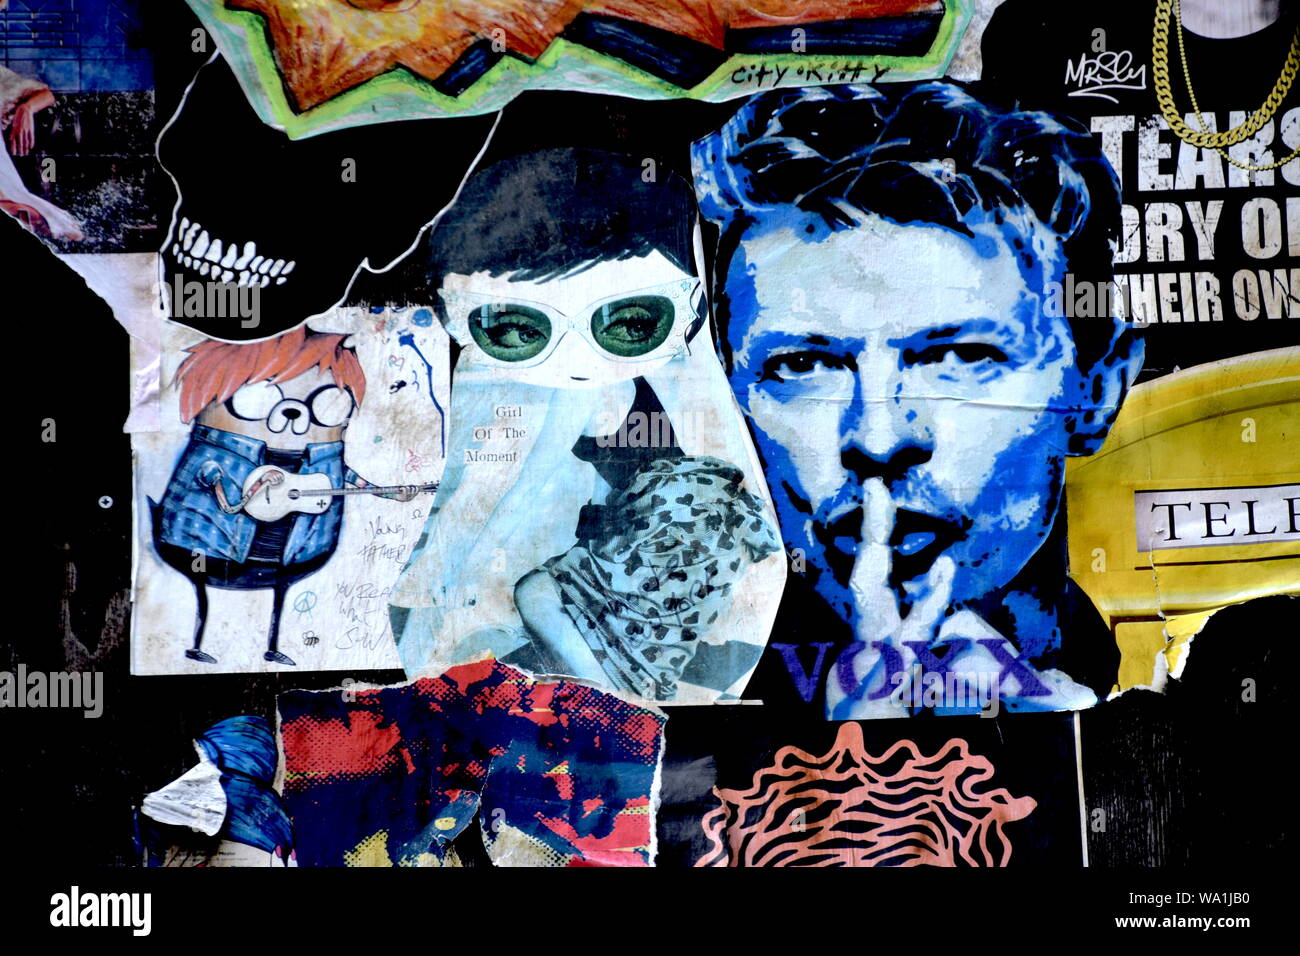 David Bowie dijo Gavin Evan's Shush retrato era su favorito de todos los tiempos. Gavin Evan's imagen icónica es retratada pegada a un muro en Croydon. Foto de stock